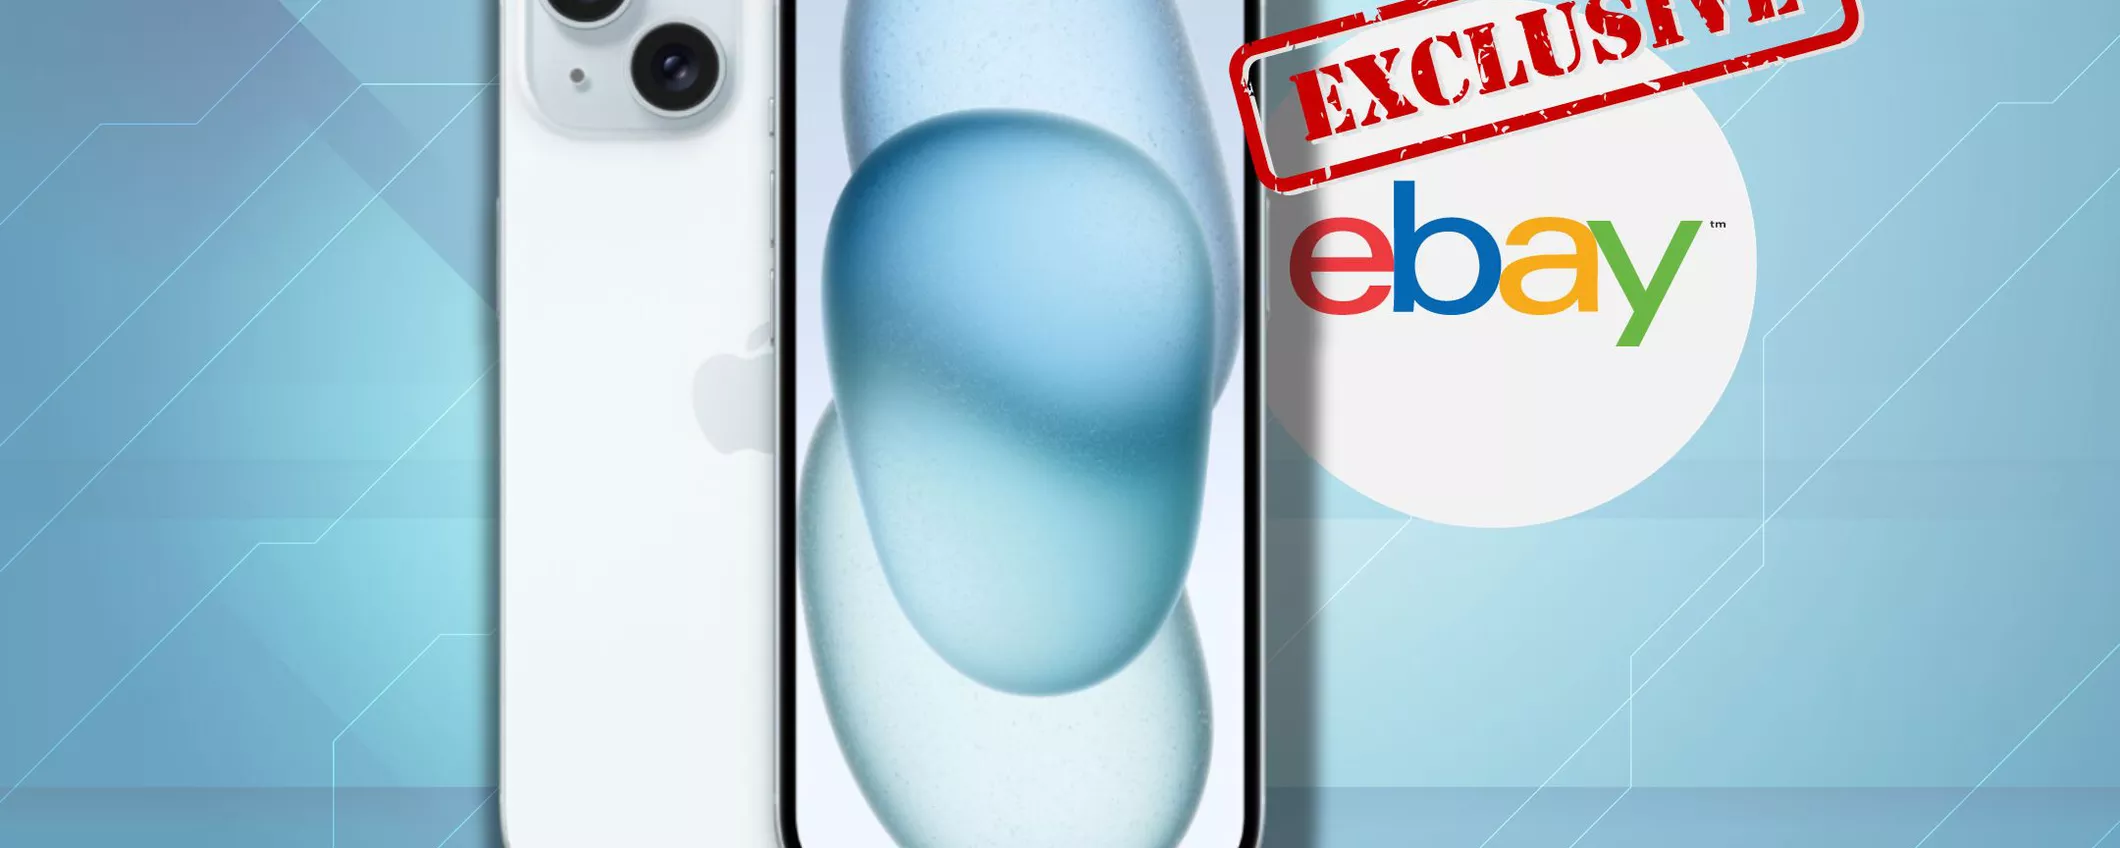 PREZZO IMPOSSIBIE per iPhone 15 Azzurro: risparmio 170€ su eBay!